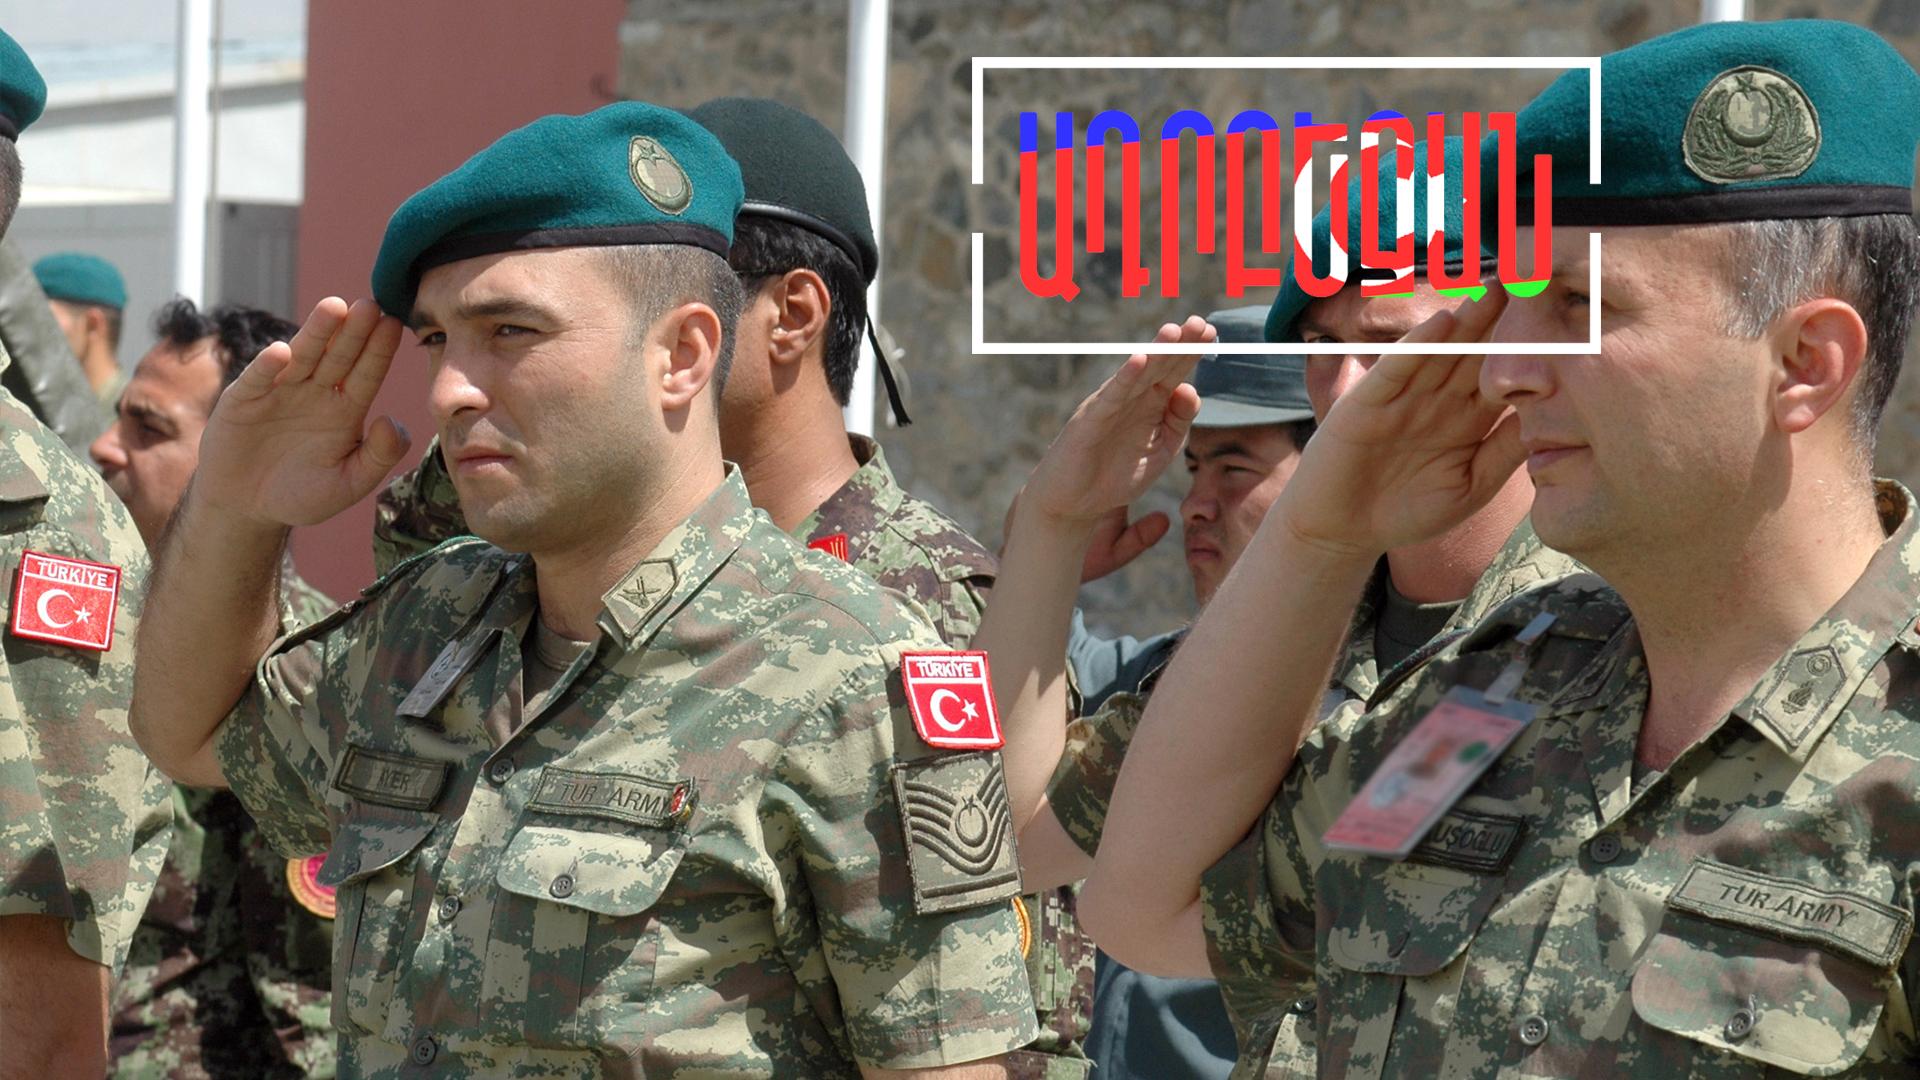 Թուրքիան մտադիր է զինված ուժեր ուղարկել Ադրբեջան